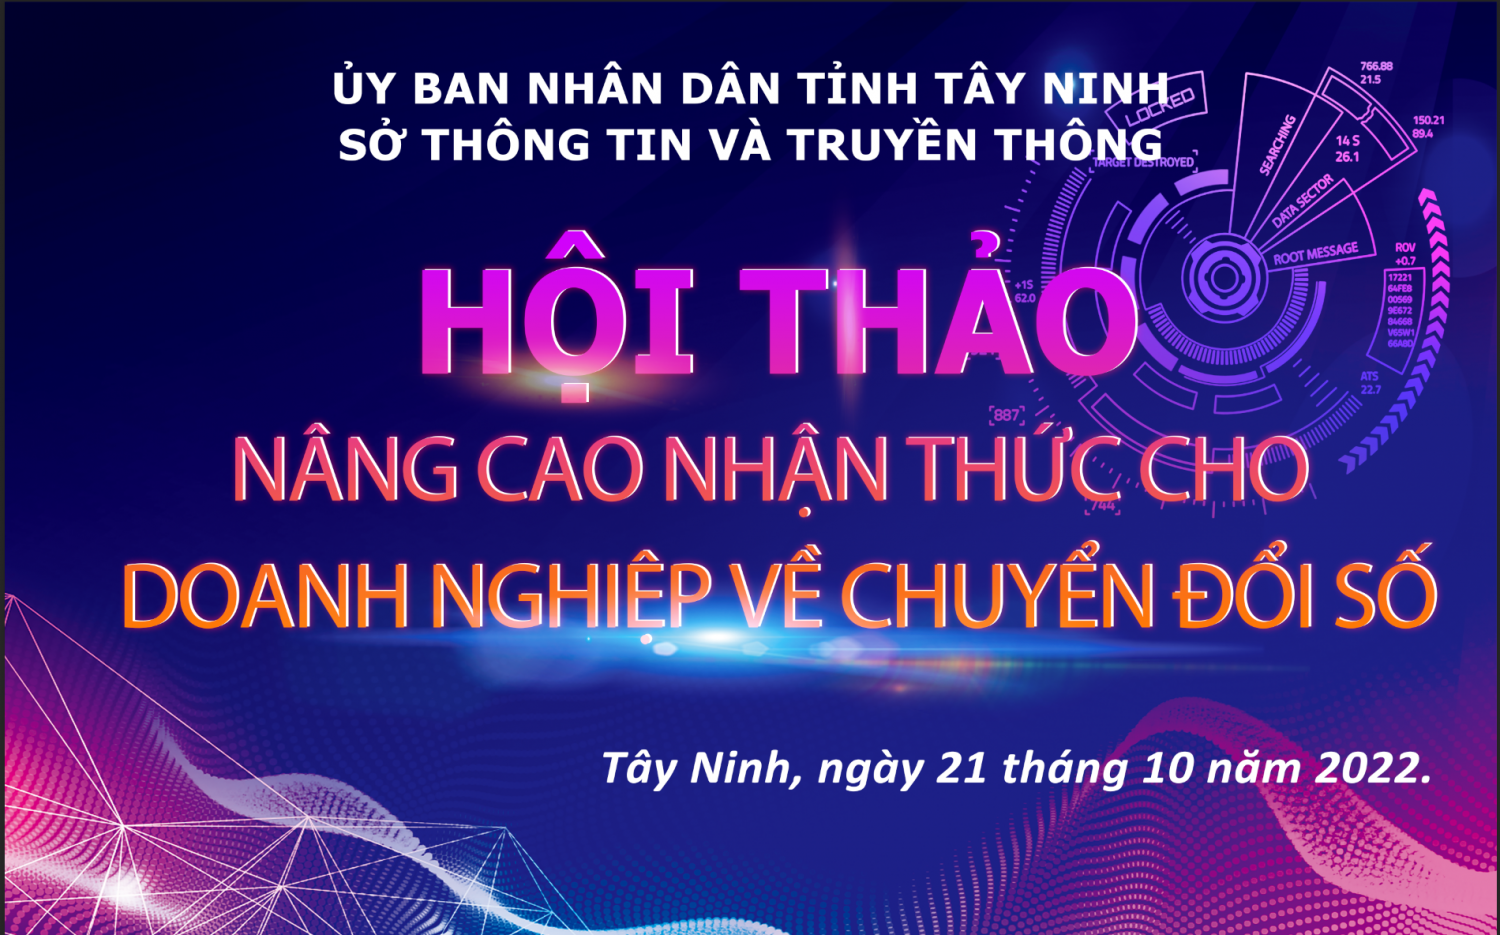 Thông báo mời tham dự Hội thảo Nâng cao nhận thức về chuyển đổi số cho doanh nghiệp vừa và nhỏ trên địa bàn tỉnh Tây Ninh năm 2022